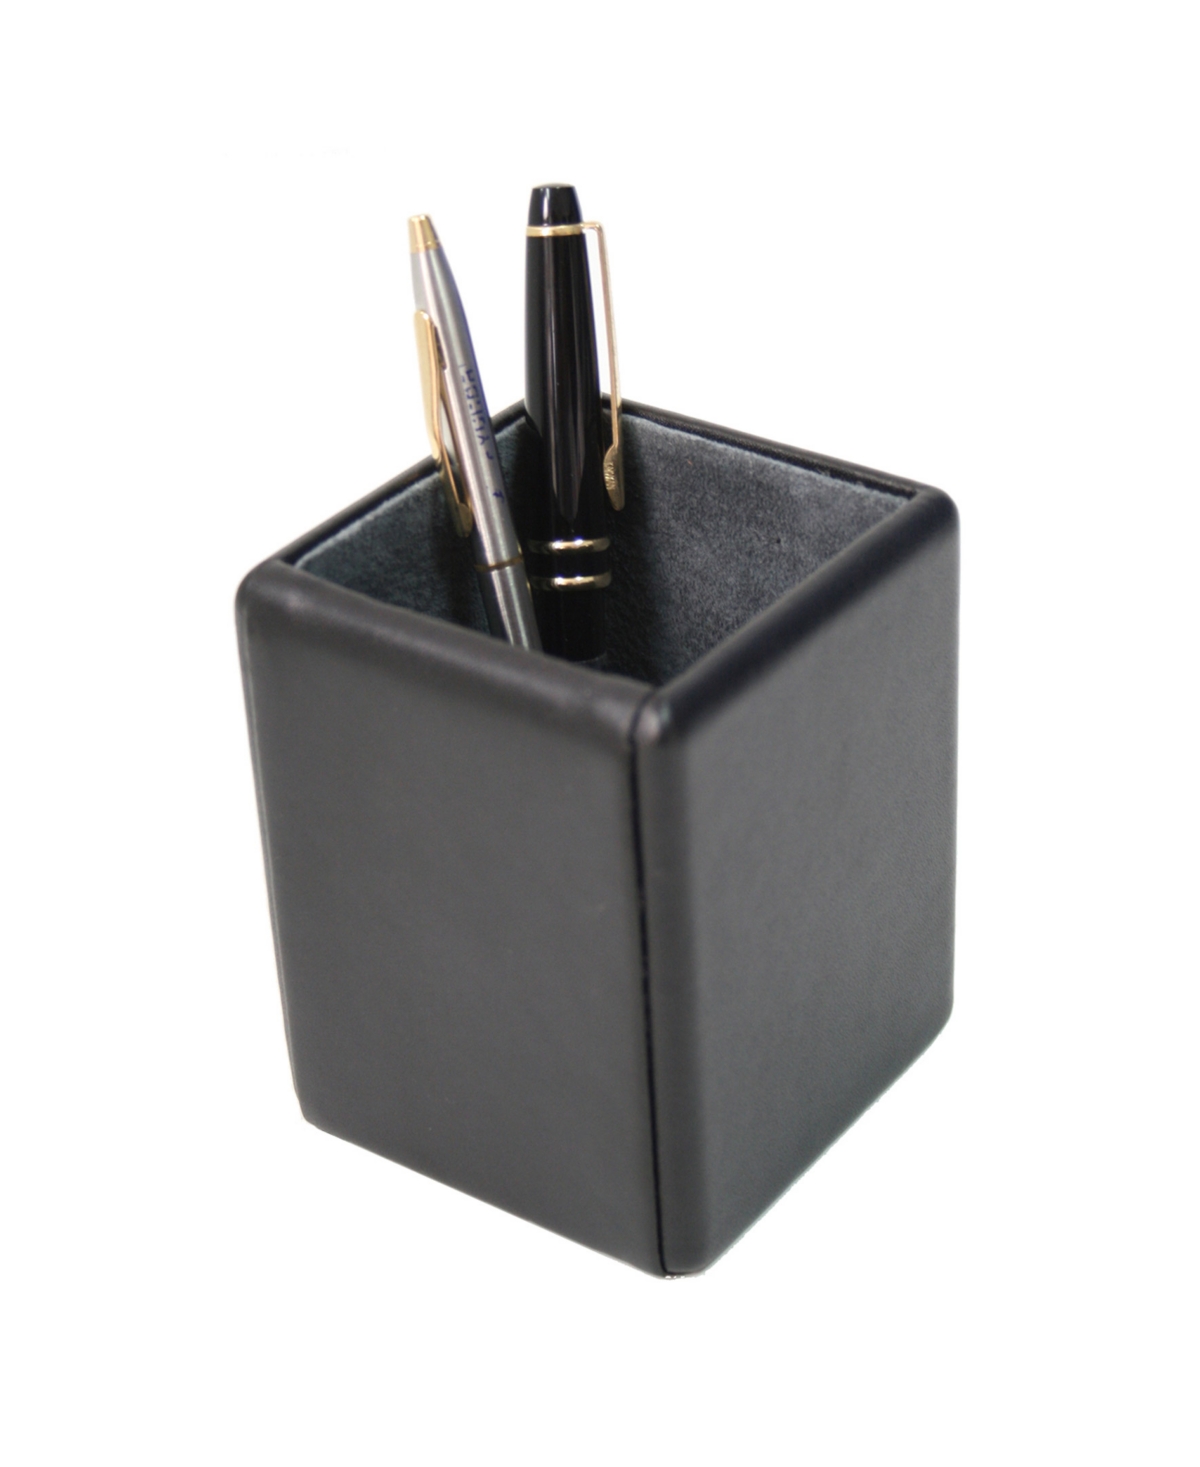 Suede Lined Pen Pencil Organizer - Black